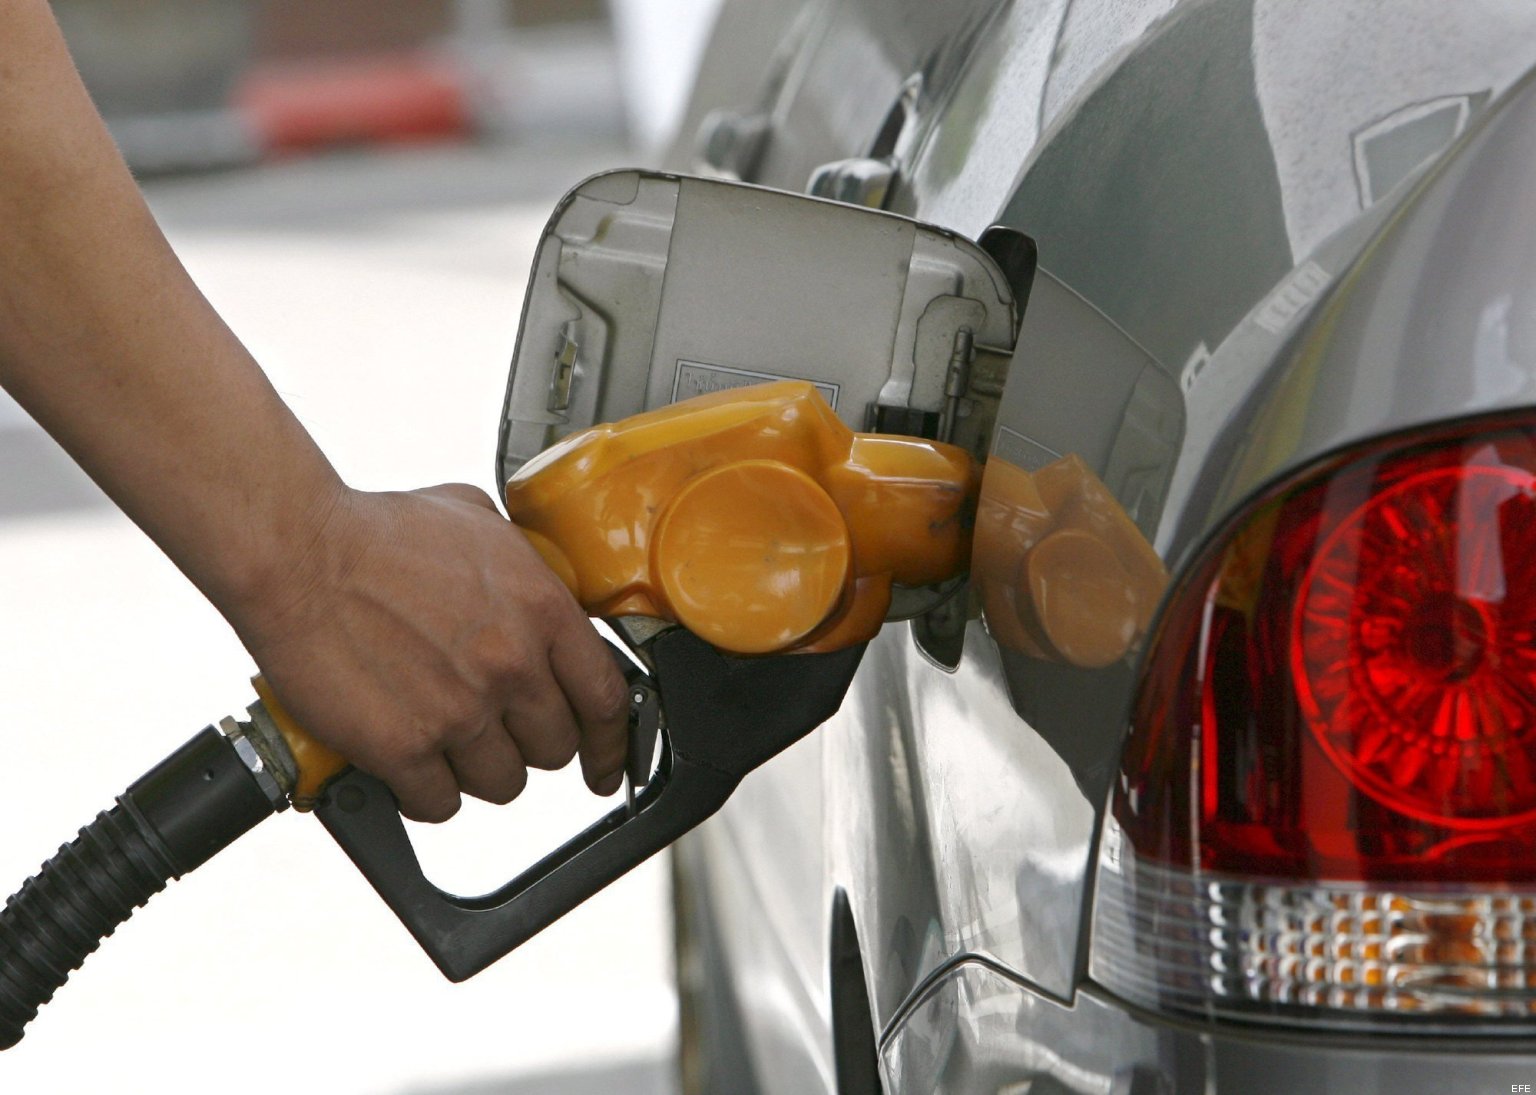 Aprueban rebaja de hasta ¢10 por litro en gasolinas tras múltiples aumentos